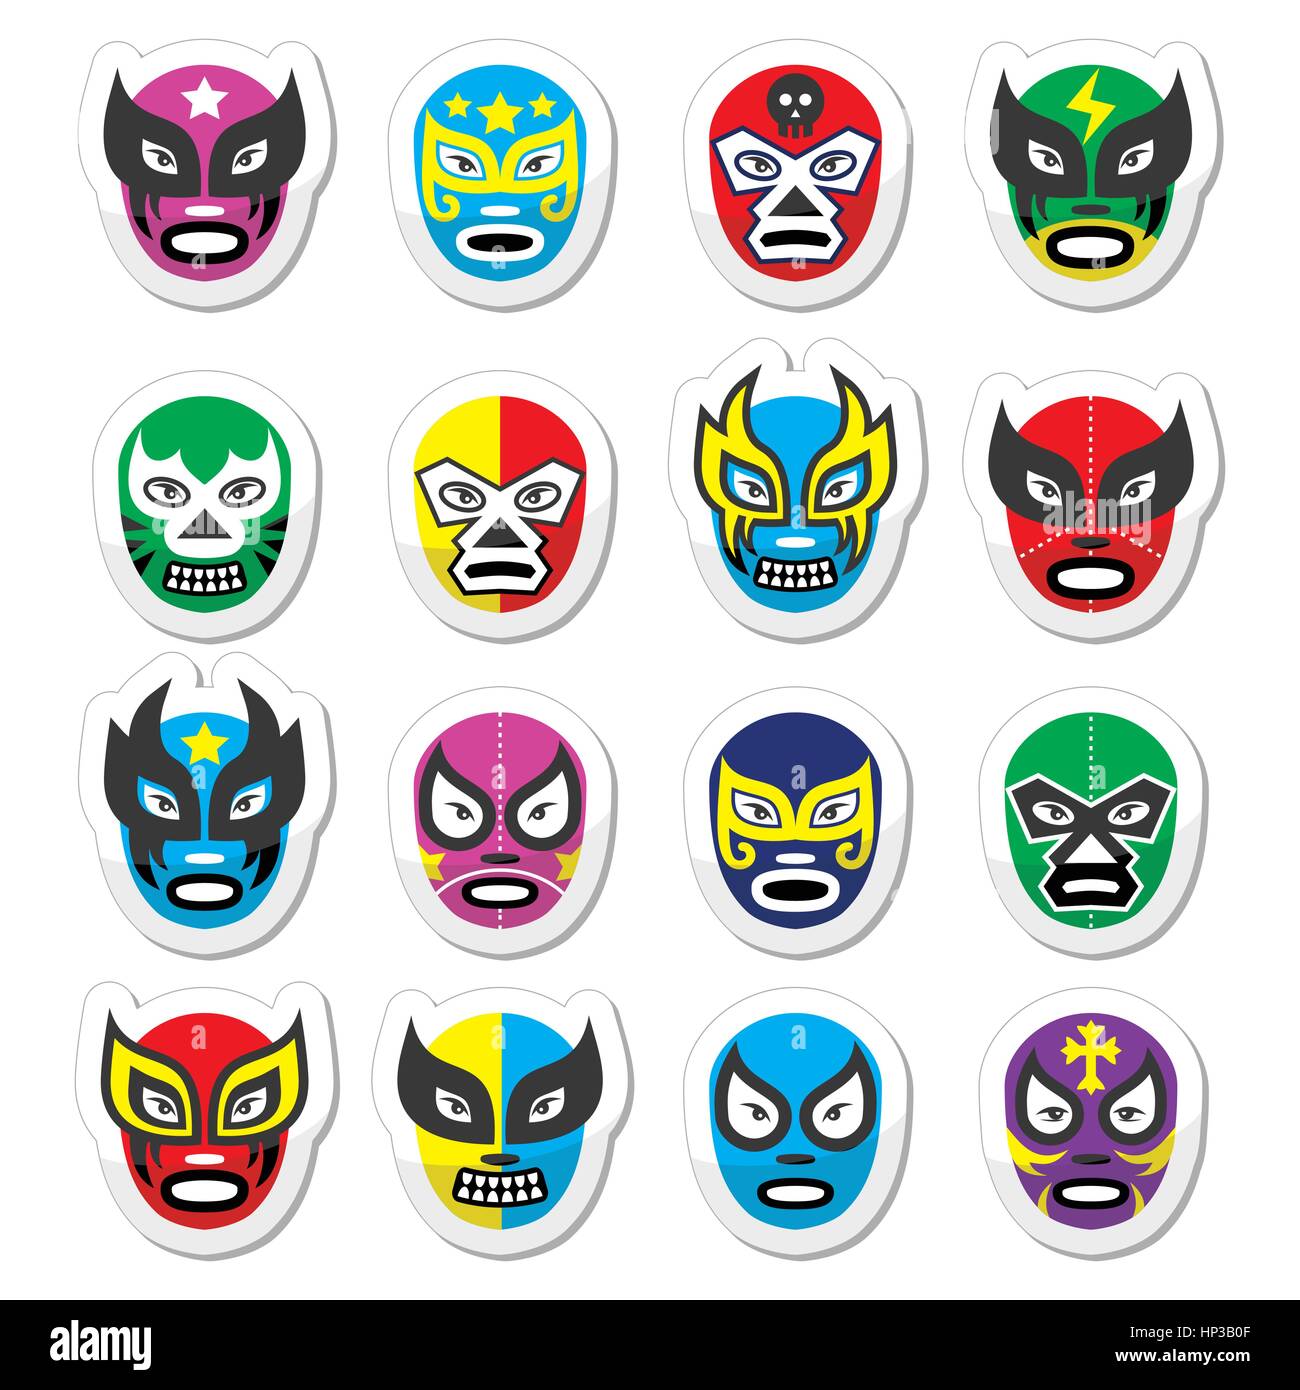 Lucha Libre, les masques de catch mexicain luchador icônes. Vector icons set de masques portés lors des combats de lutte au Mexique isolated on white Illustration de Vecteur